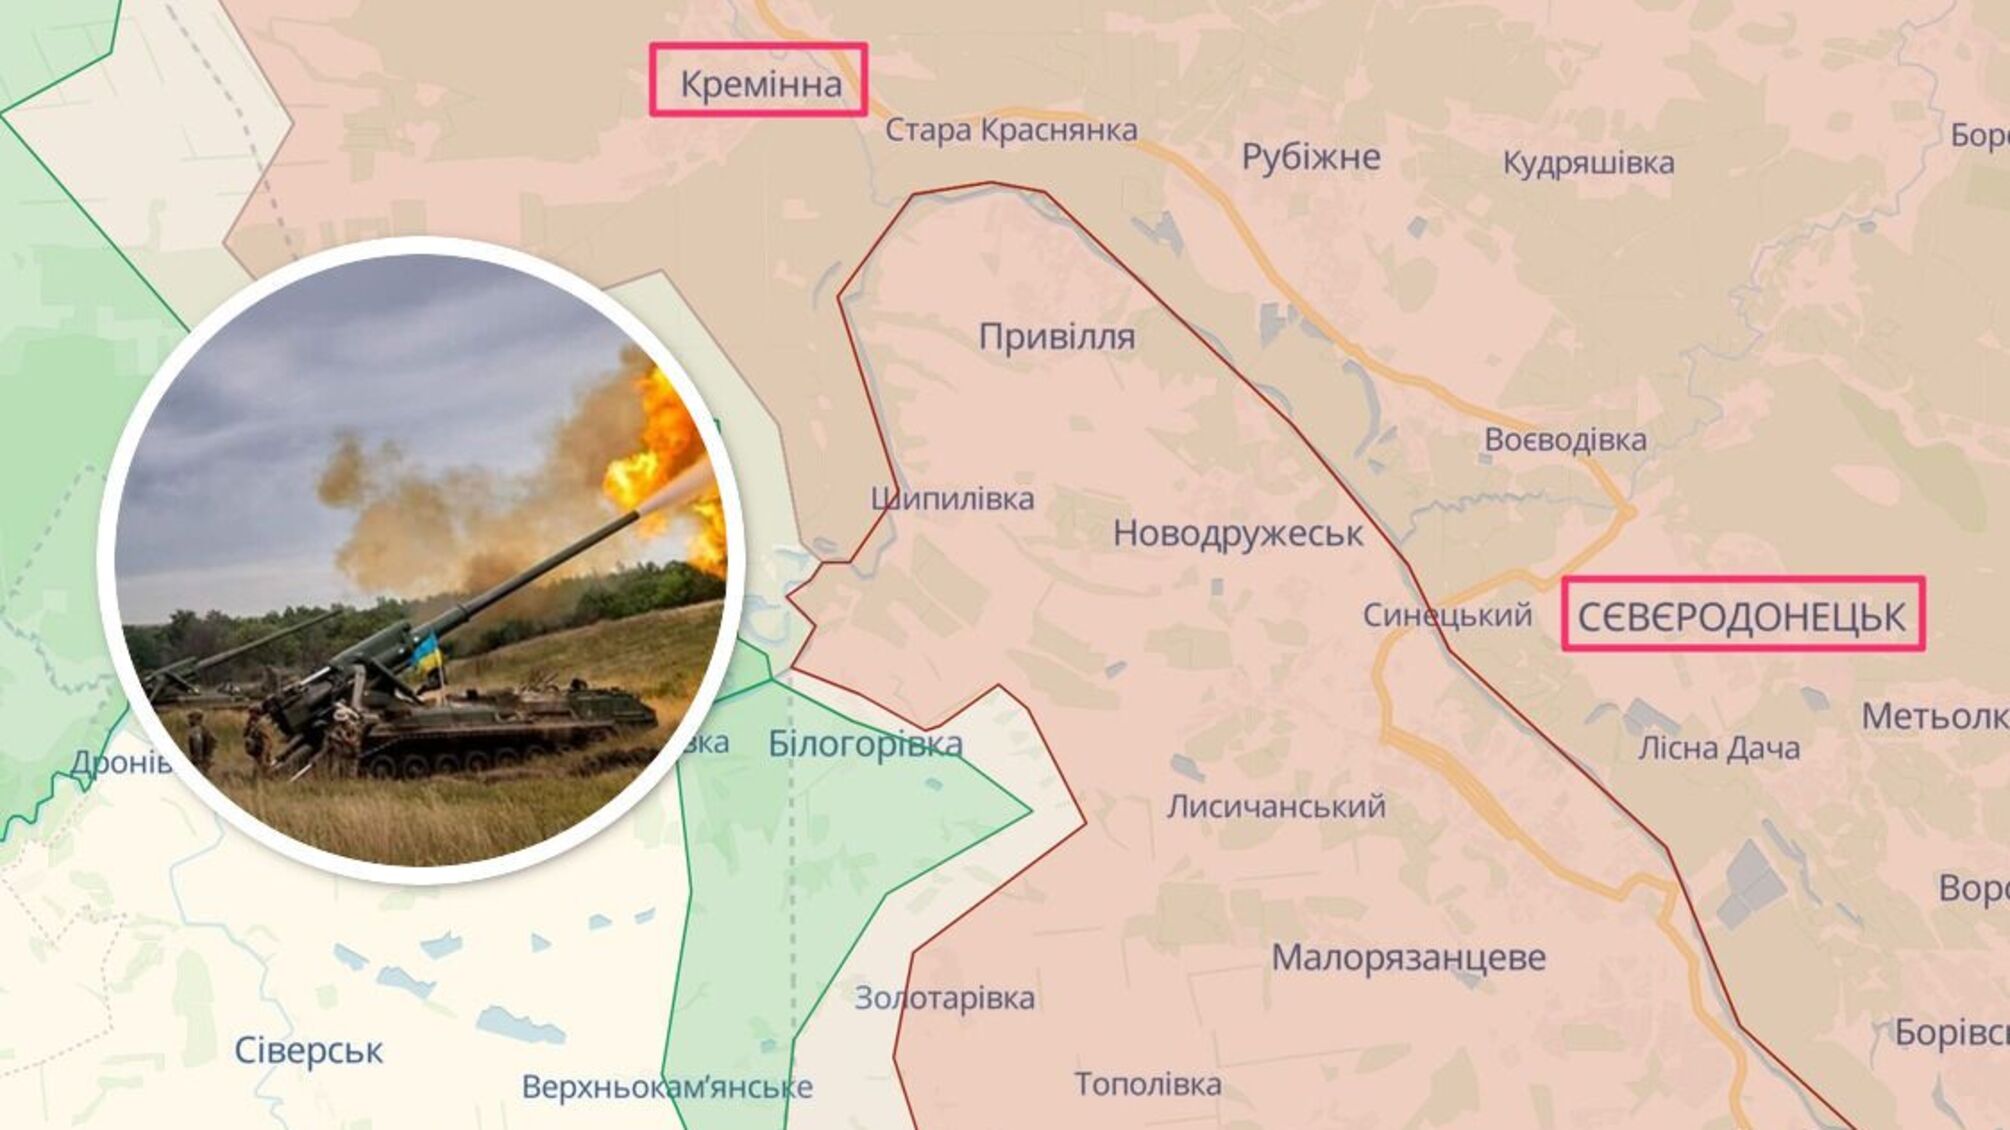 Важлива ділянка траси на Луганщині під вогневим контролем ЗСУ